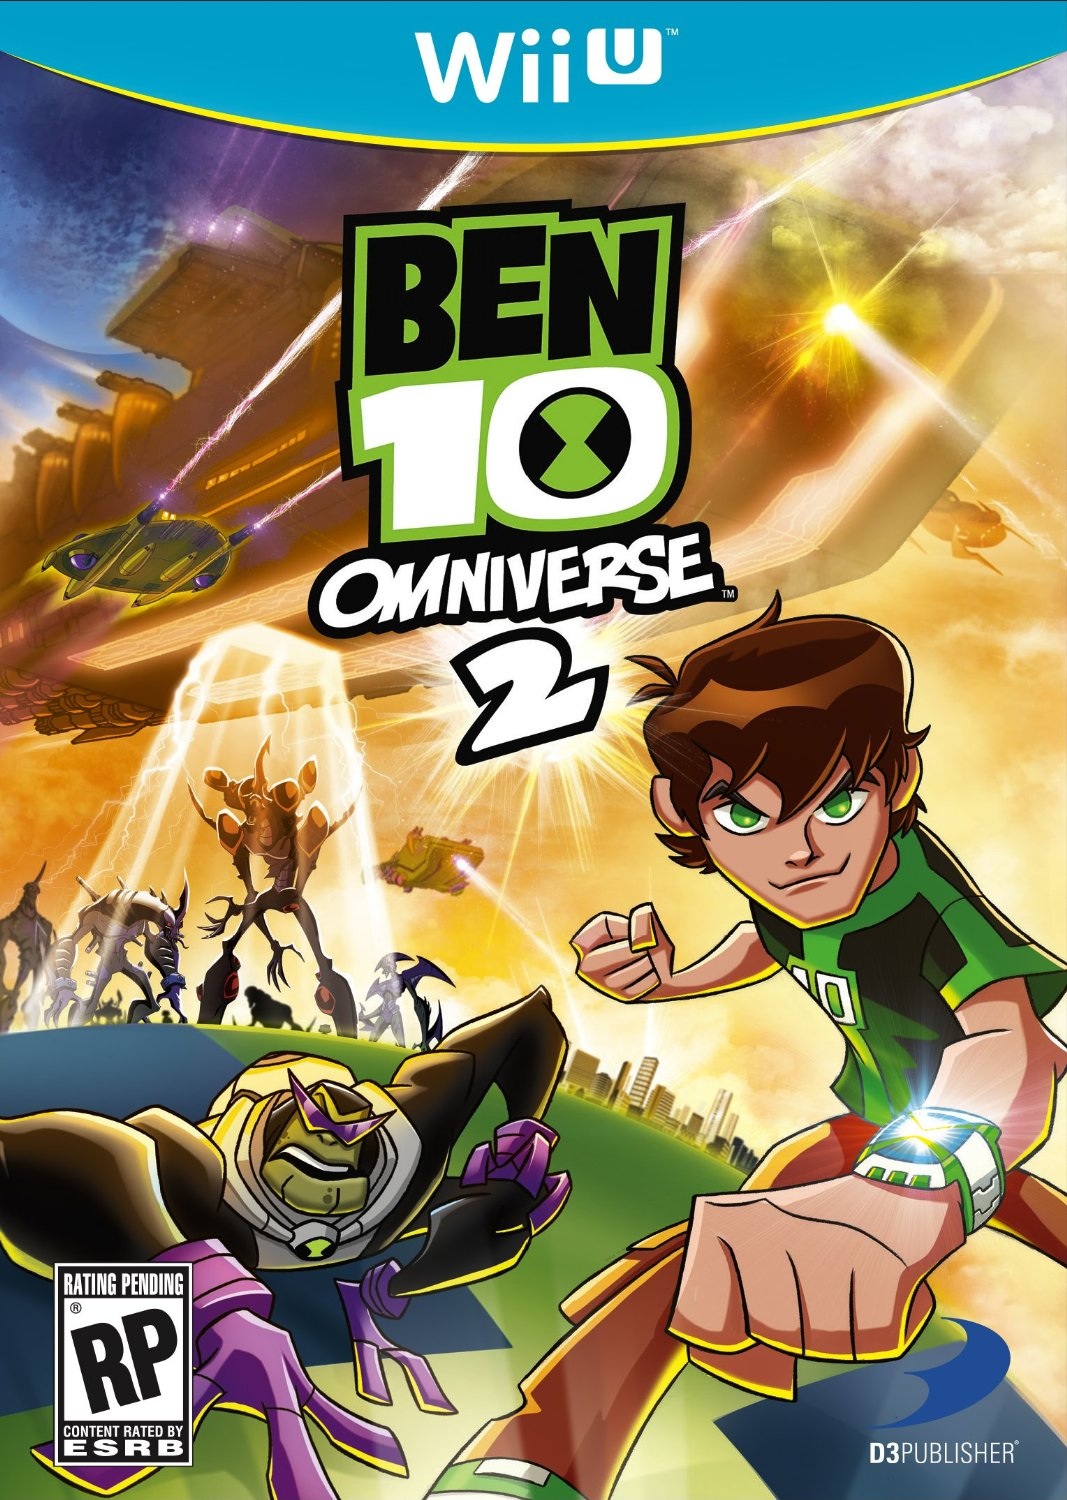 Ben 10: Omniverse 2 (Video Game) | Cartoon Network Wiki | FANDOM